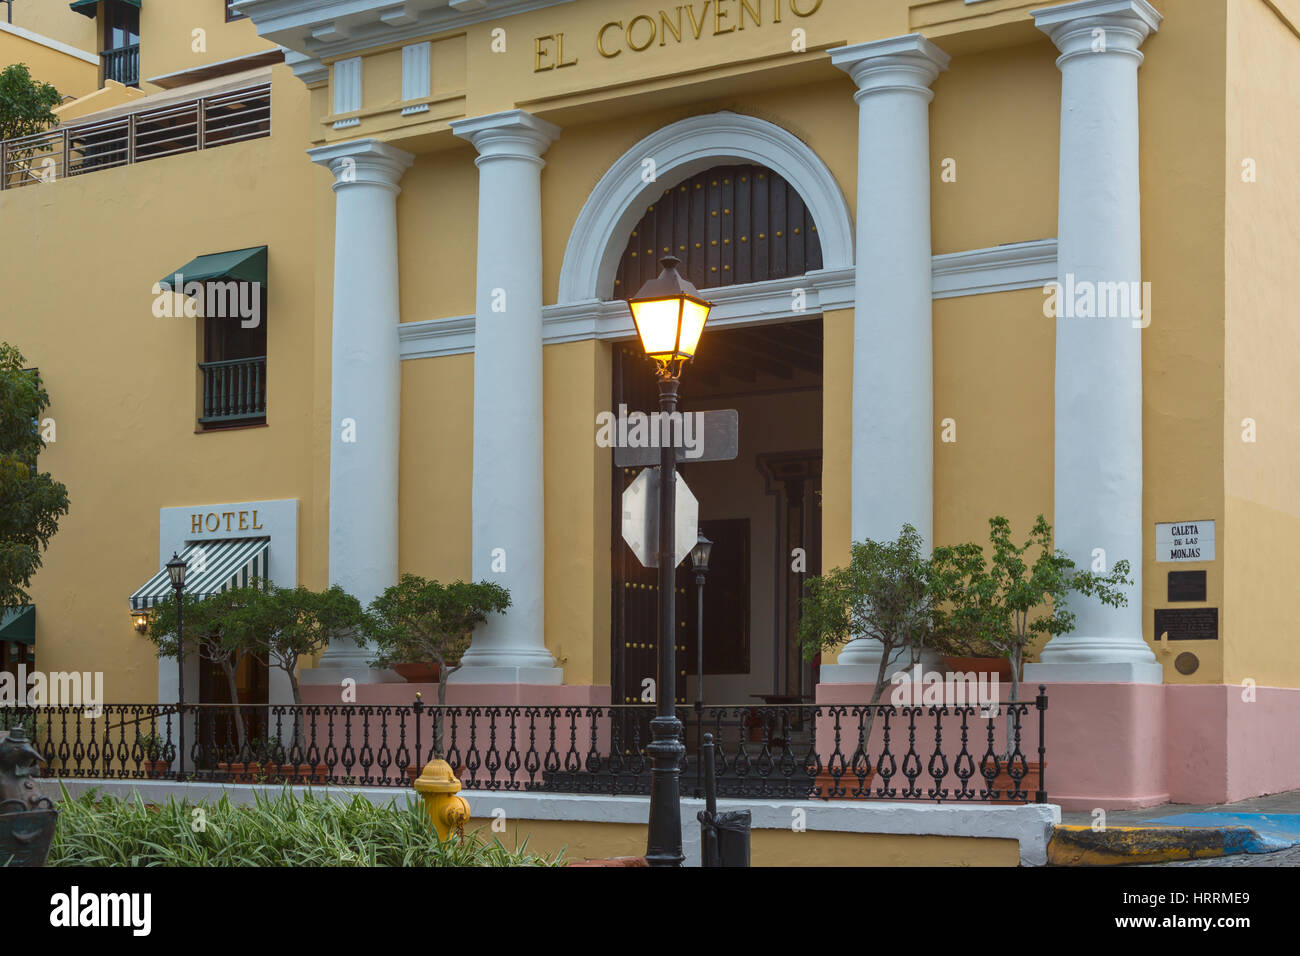 HOTEL EL CONVENTO PLAZA DE LA CATEDRAL OLD SAN JUAN PUERTO RICO Stock Photo